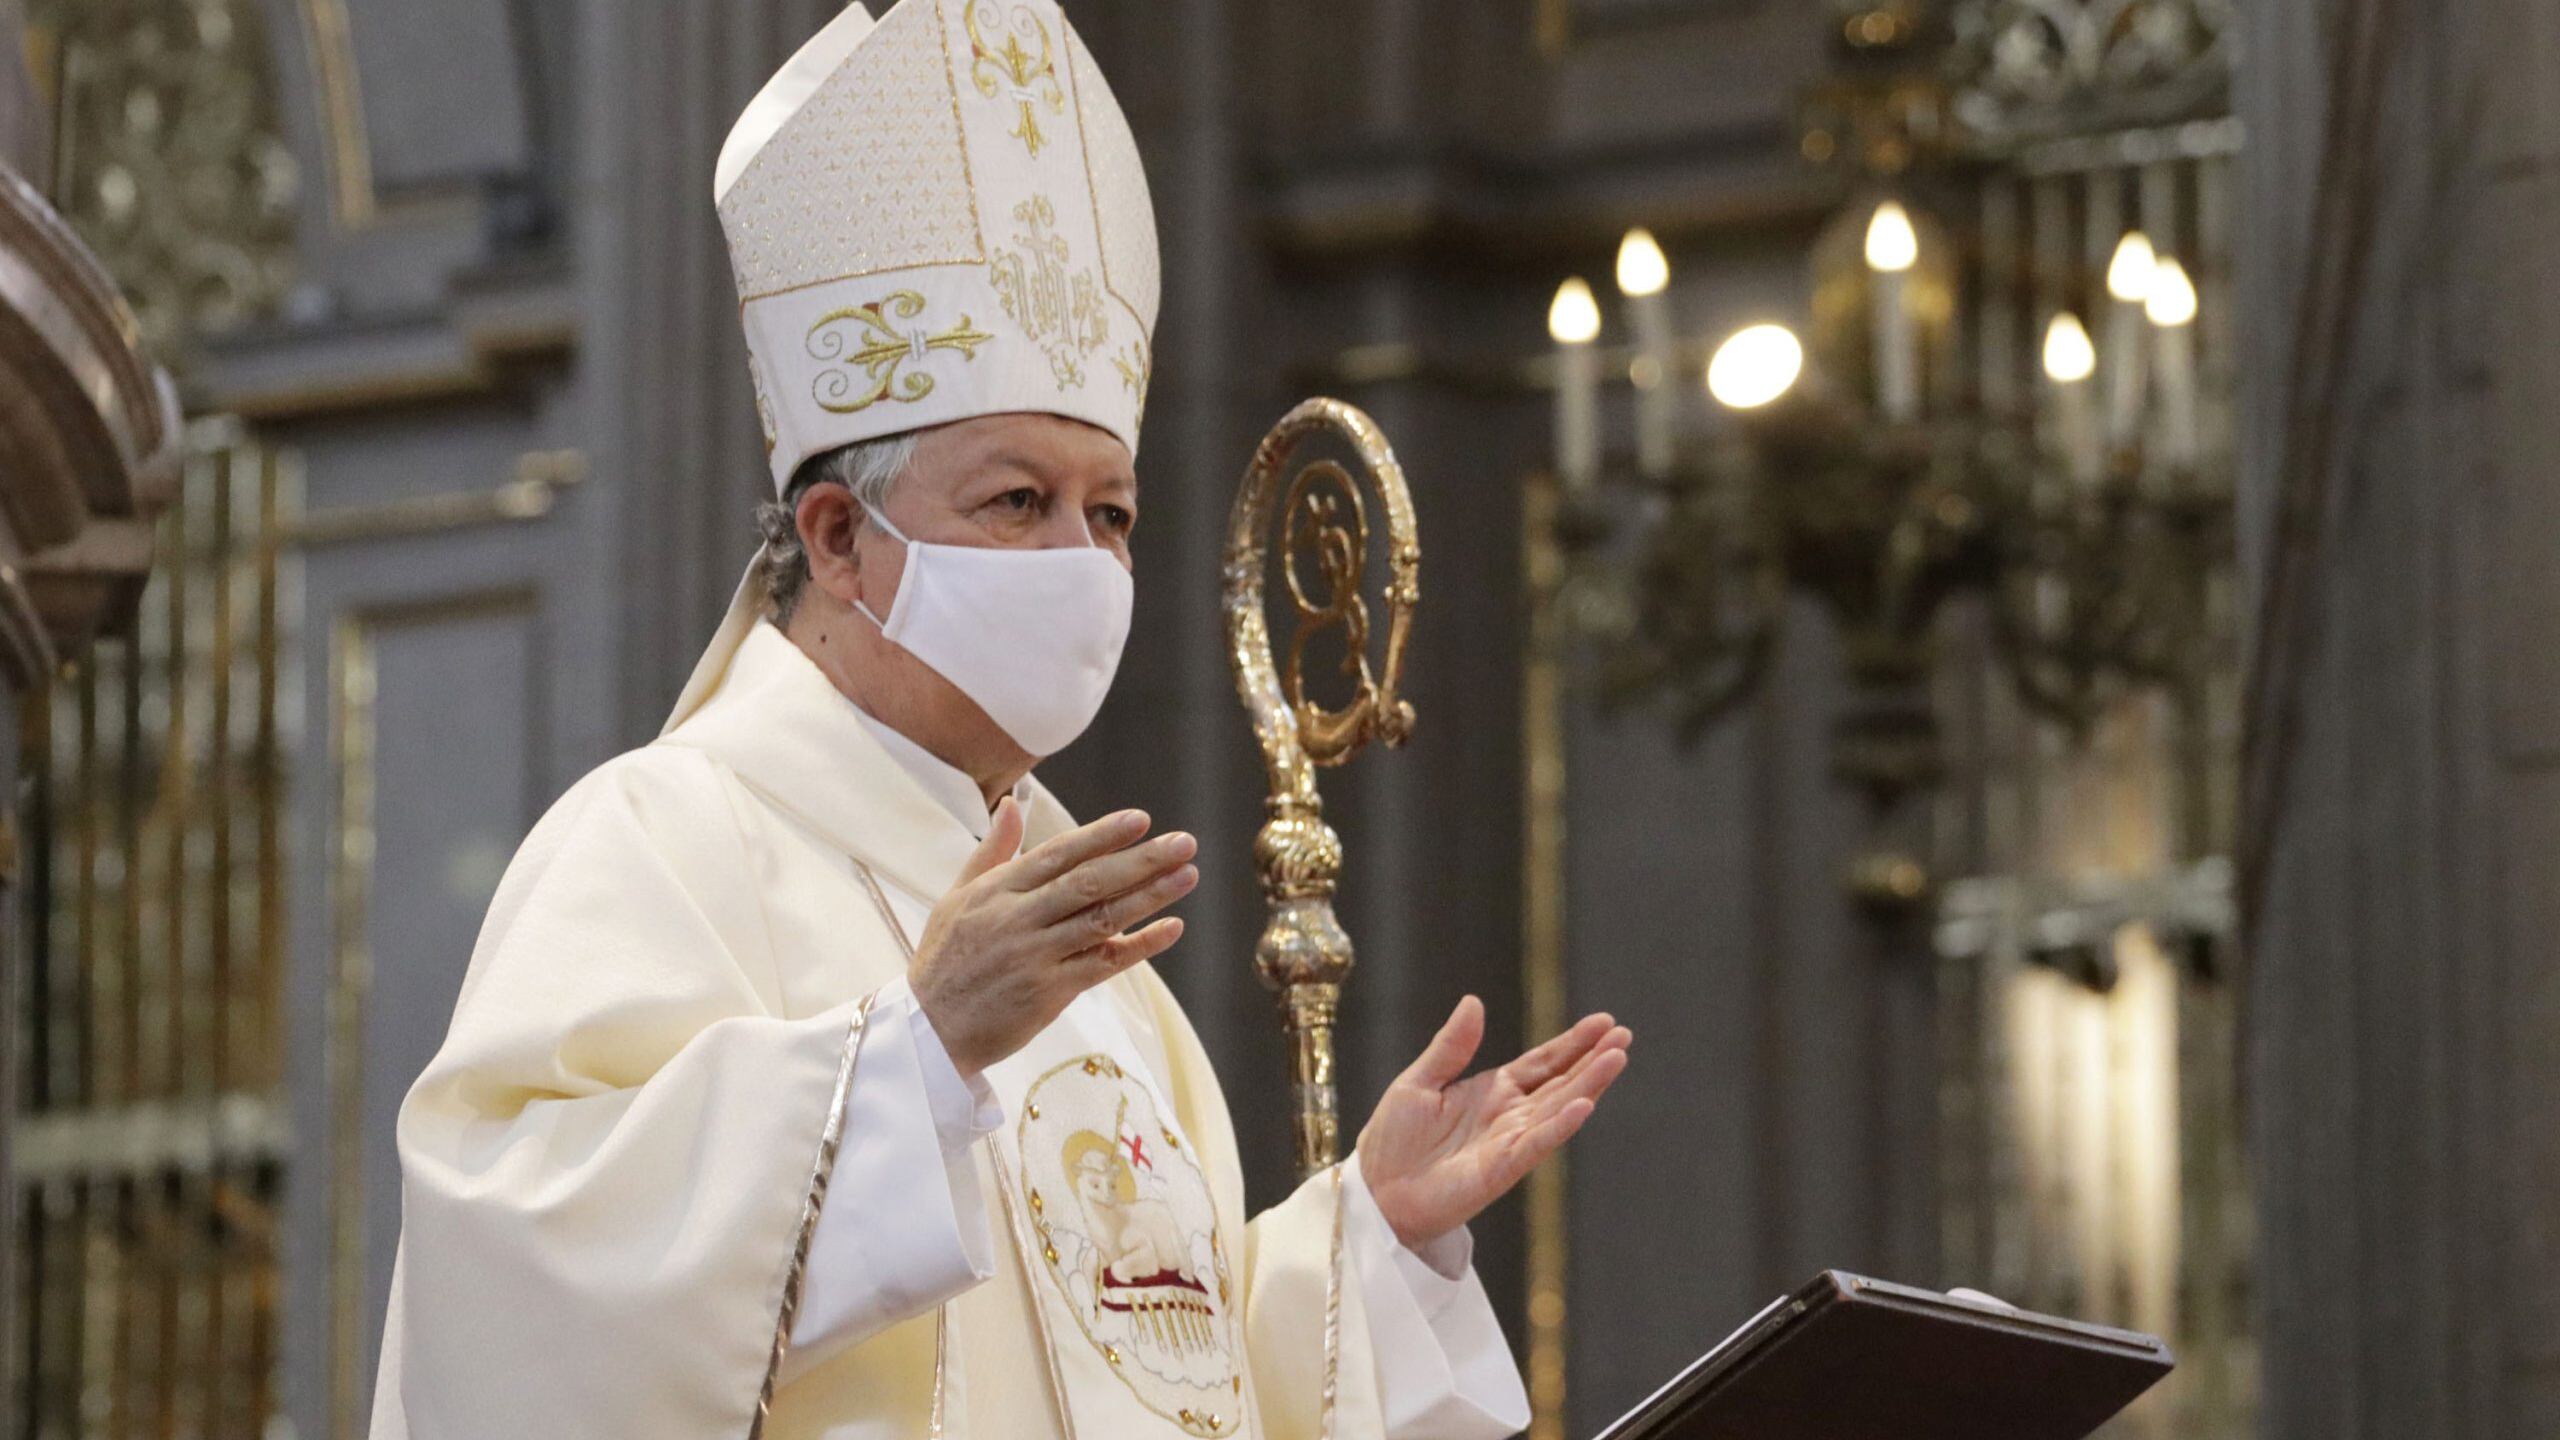 Arzobispo impulsa oraciones por víctimas de L12, Colombia y Covid